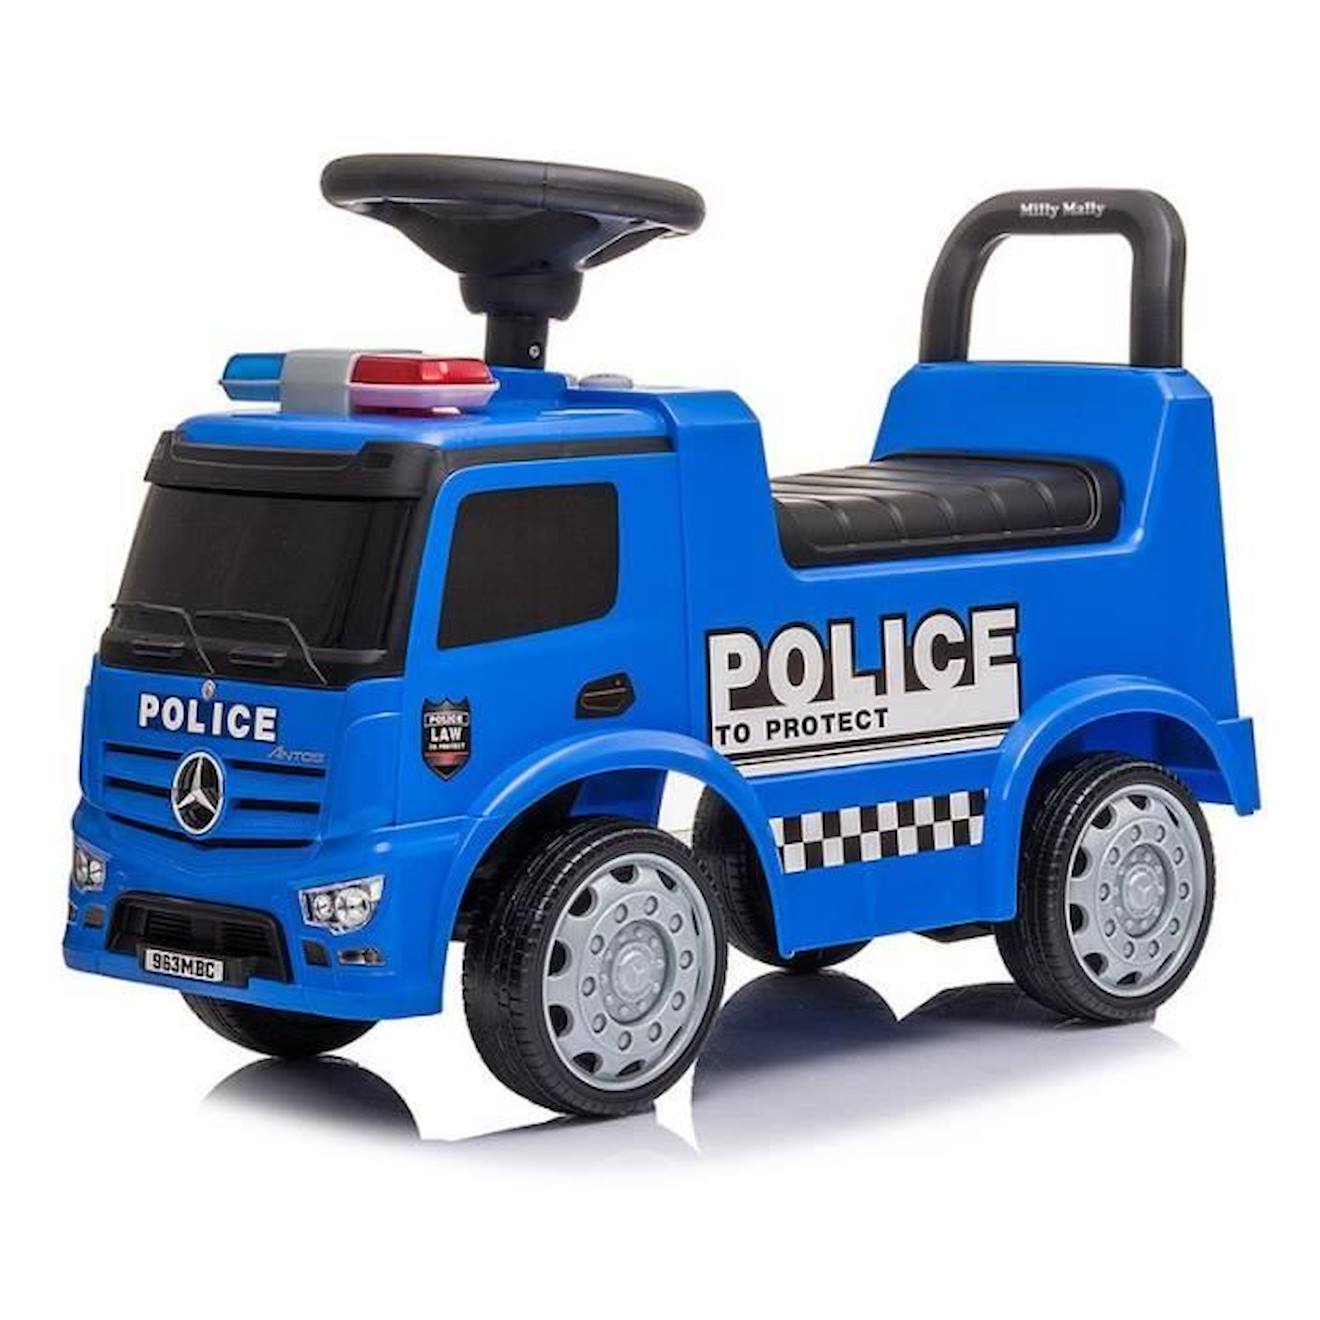 Porteur Mercedes Antos Police Truck Pour Enfant - Milly Mally - Bleu - Jouet En Plastique Avec 4 Rou